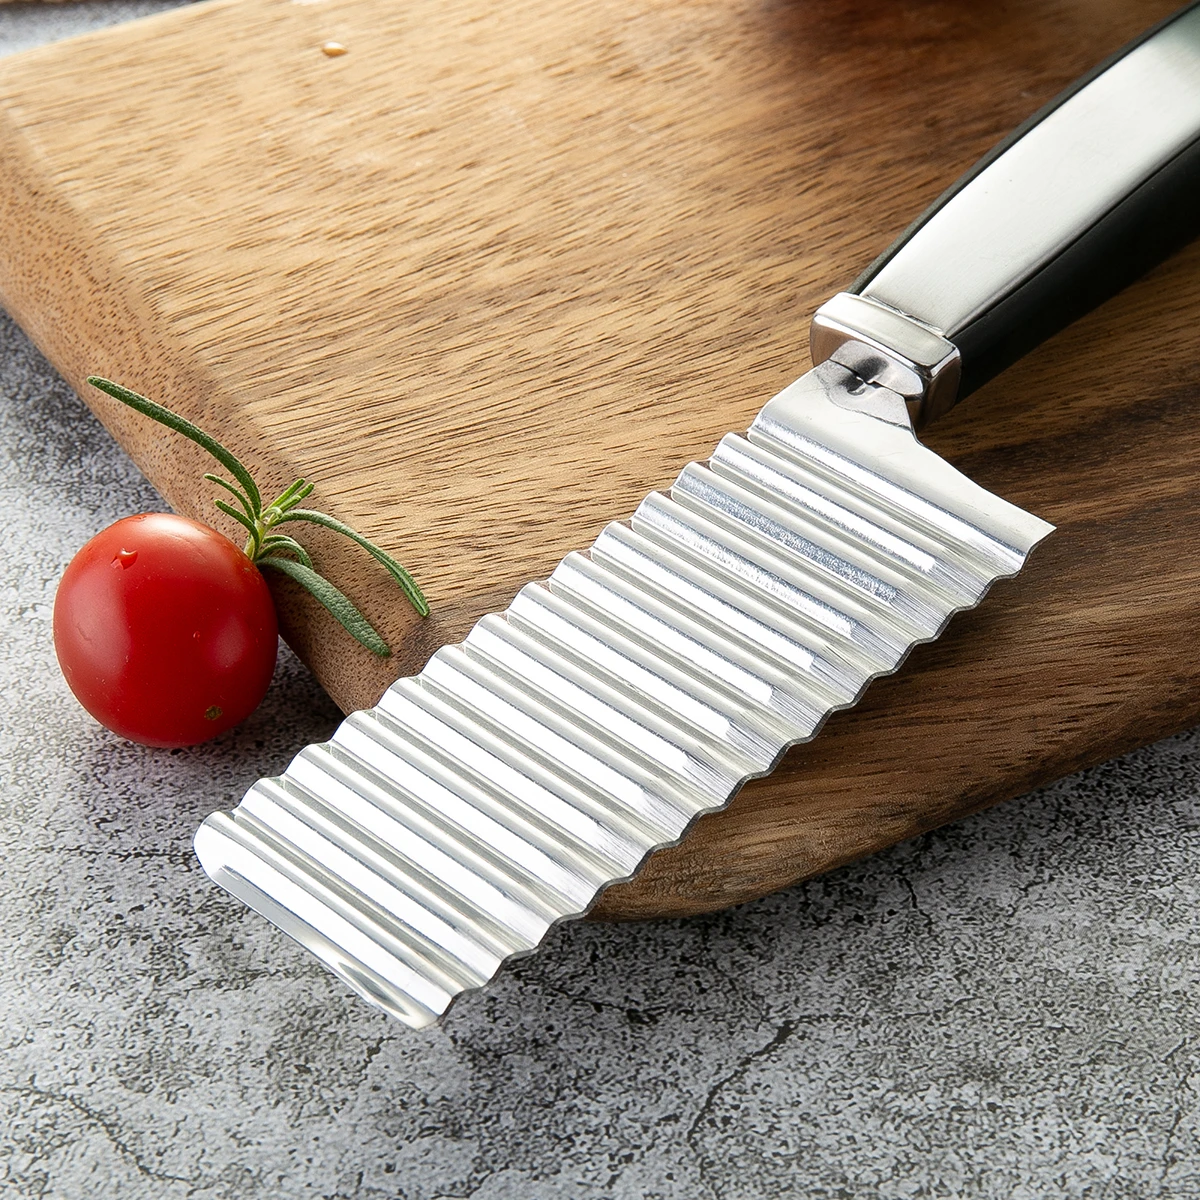 DAOMACHEN костяные ножи Профессиональный кухонный нож 7 дюймов из нержавеющей стали имитация Santoku деревянная ручка для ножа